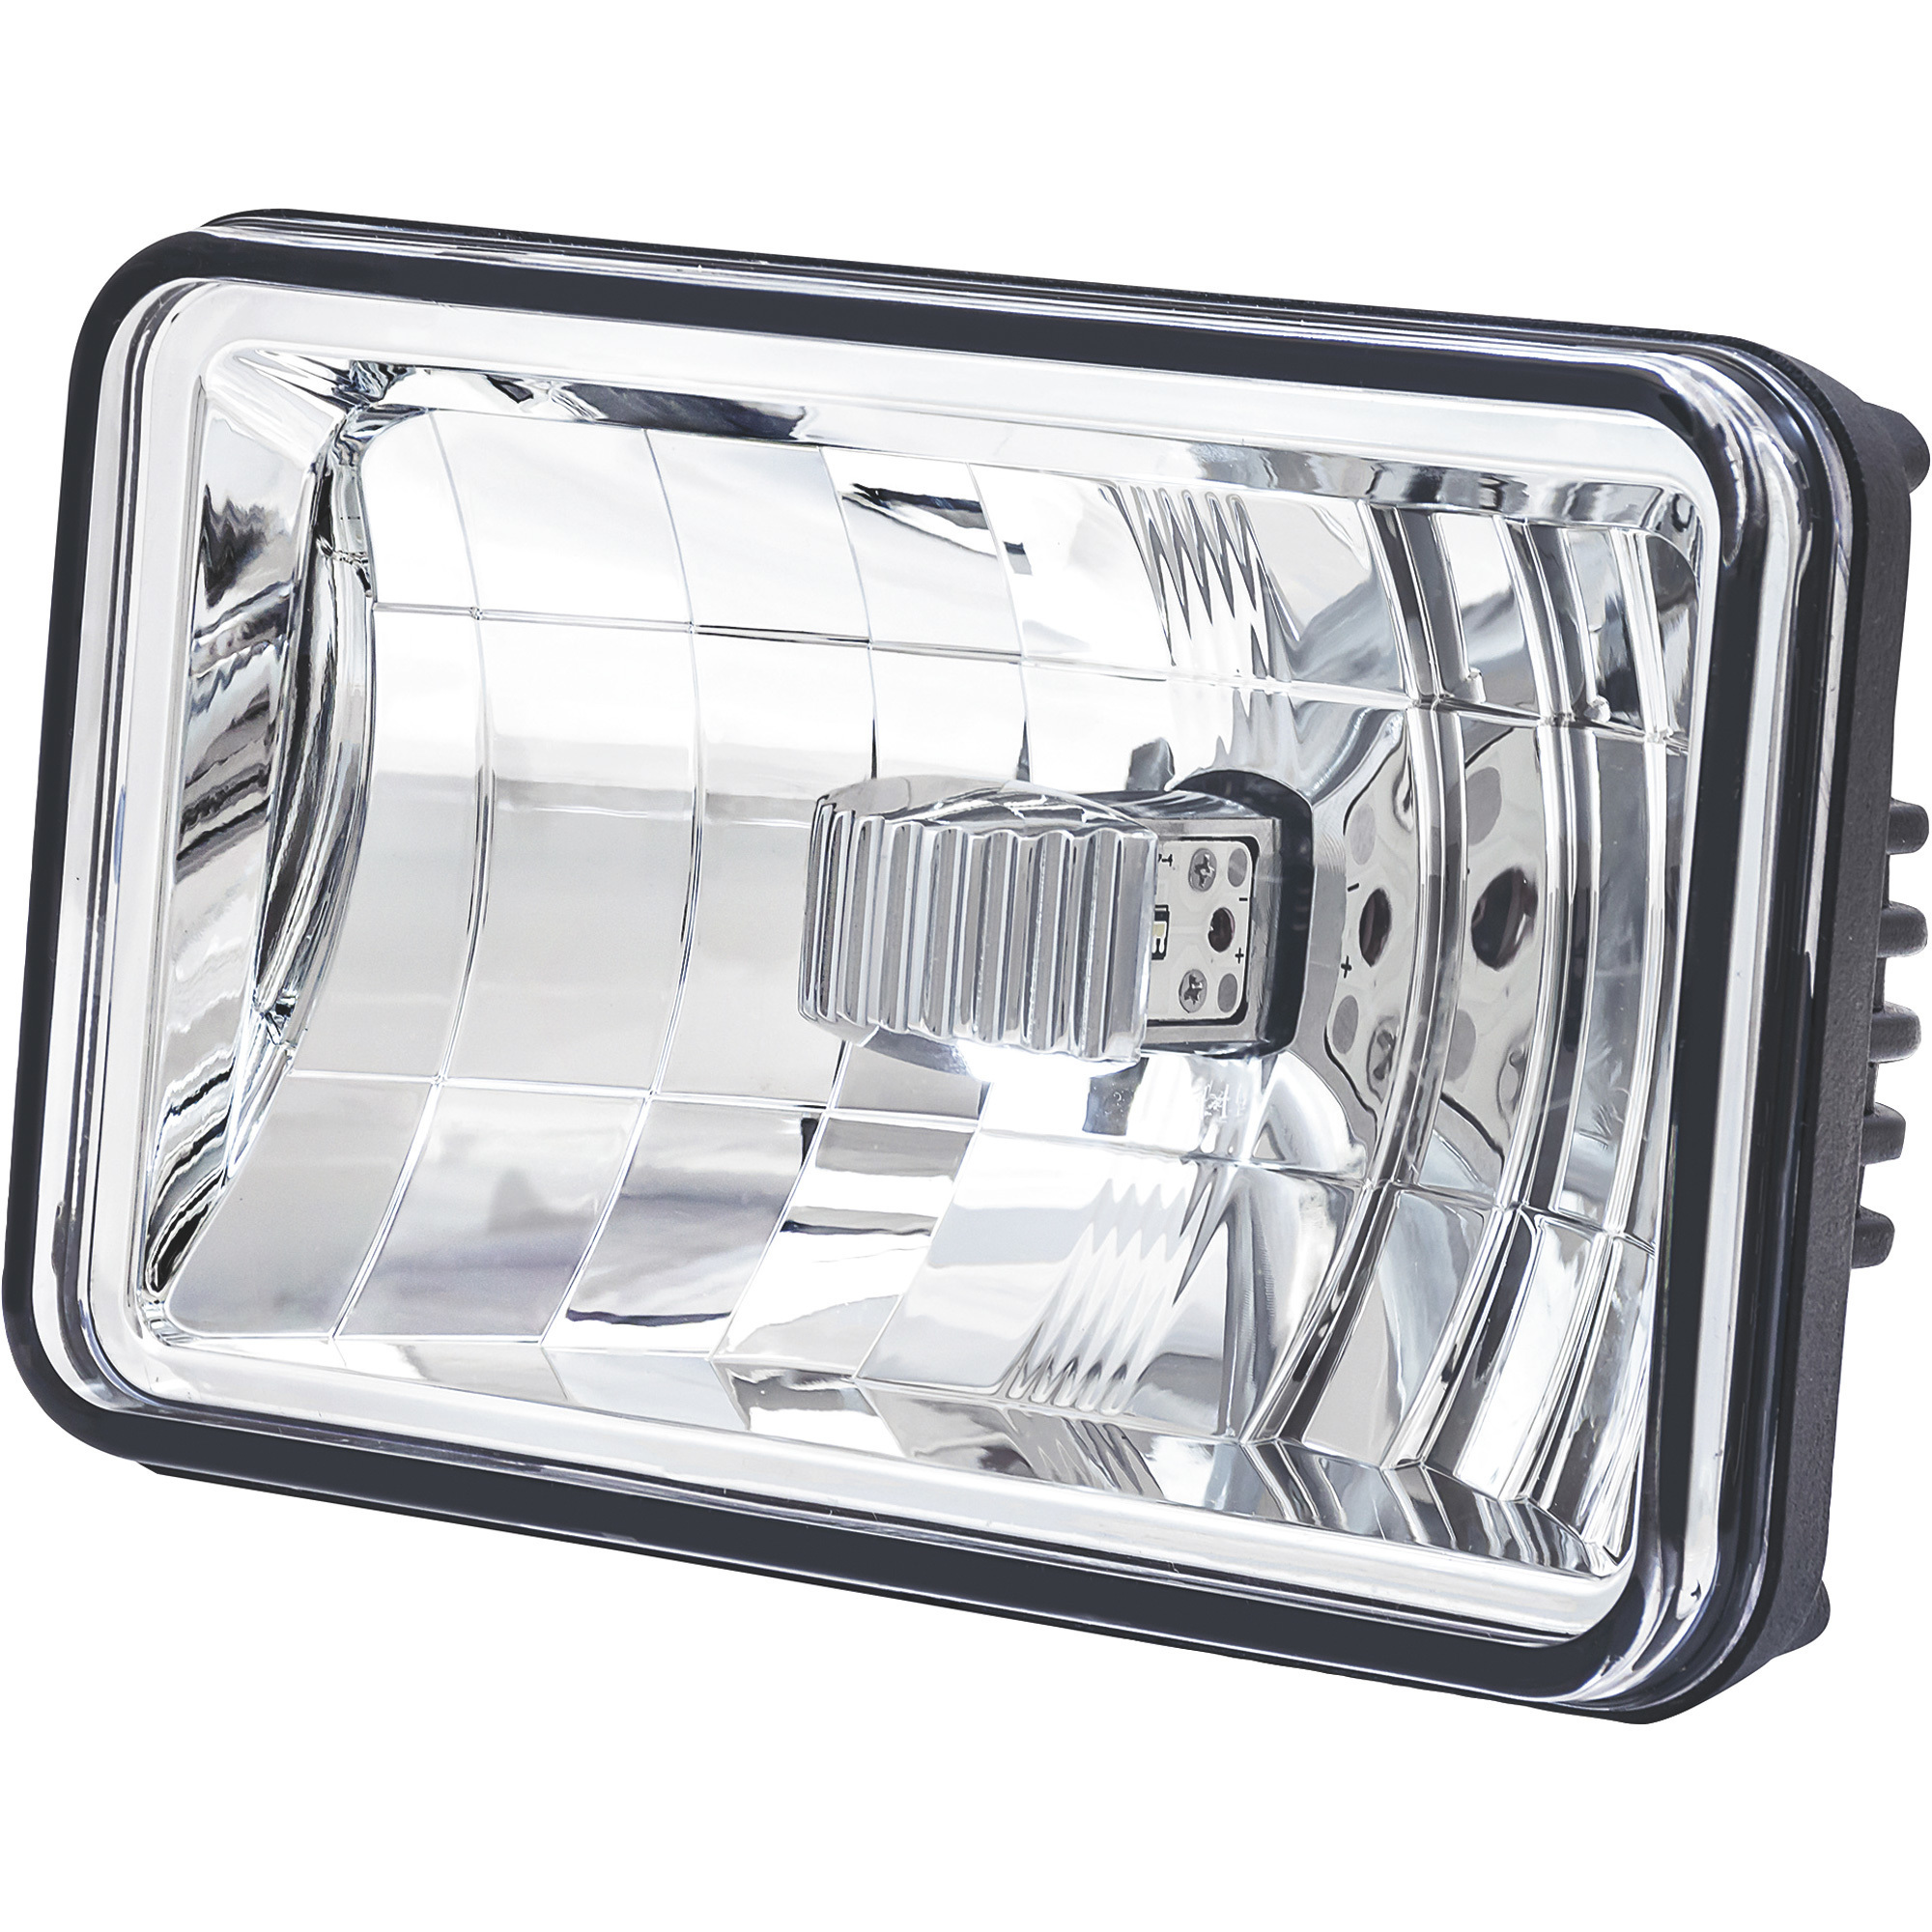 Trux Accessories 6Inch x 4Inch Low Beam LED Standard Semi-Truck Headlight â White, Model TLED-H2